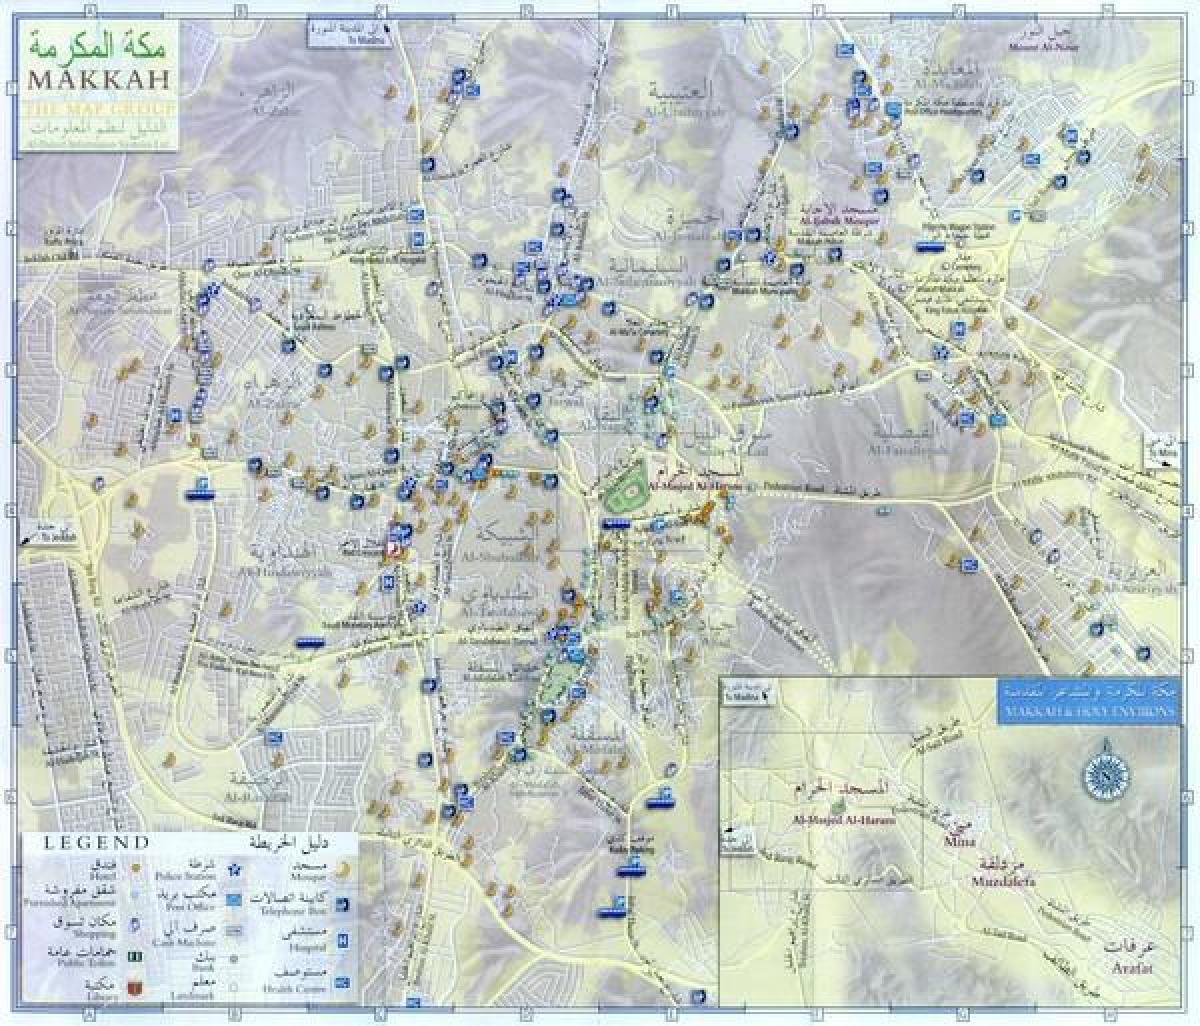 सड़क के नक्शे के मक्का शहर